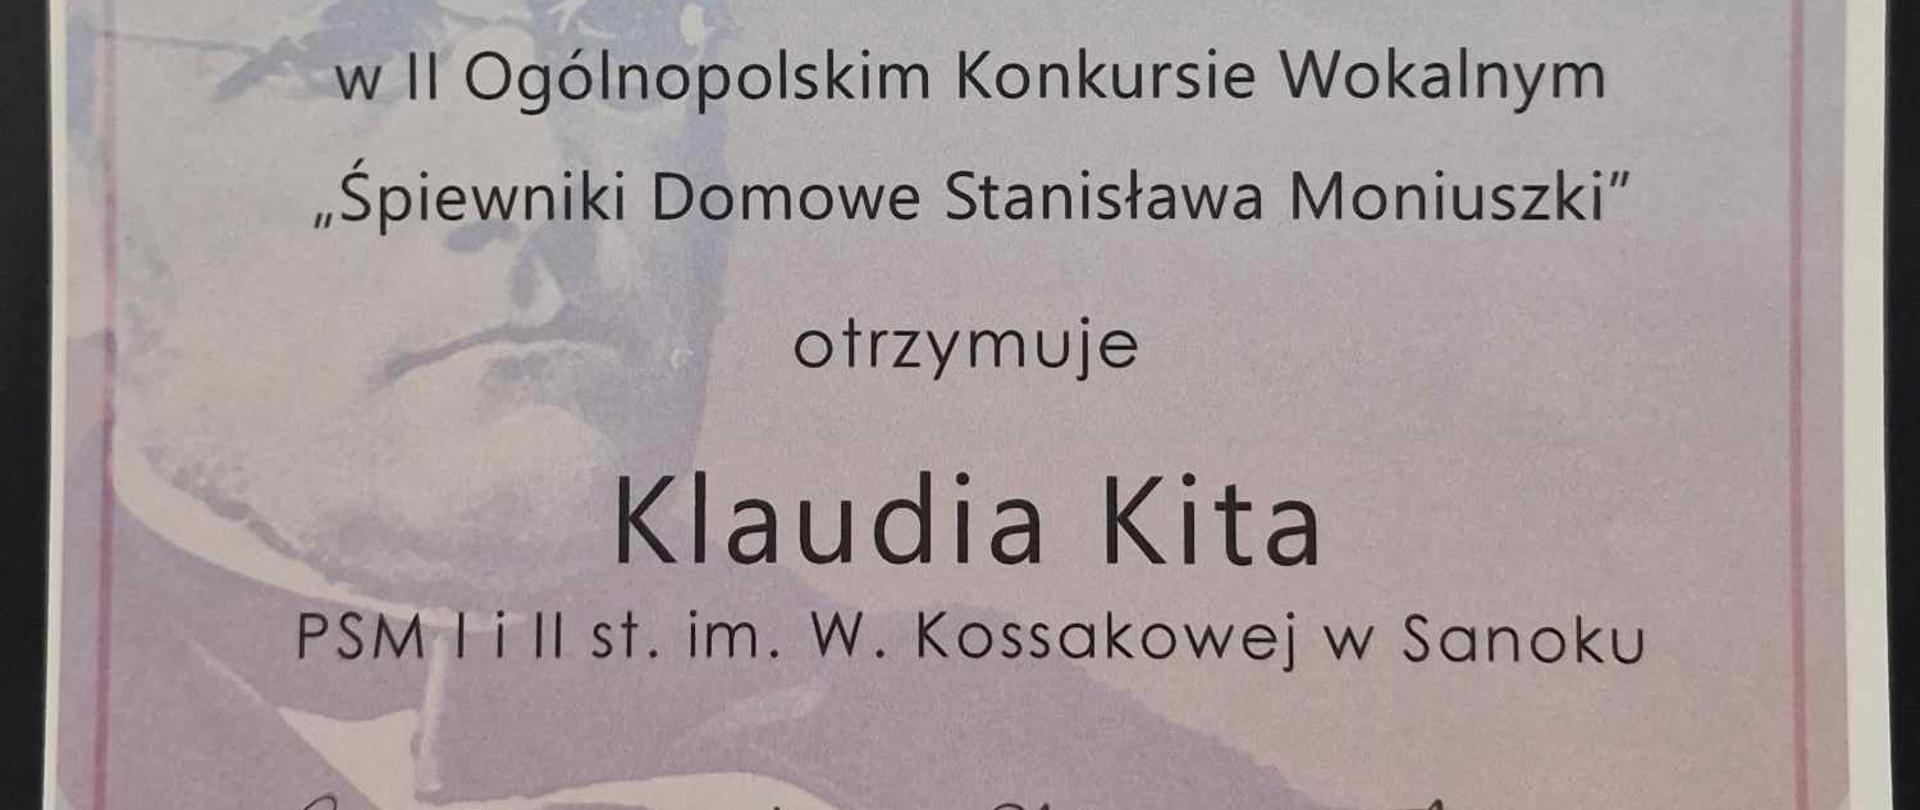 Dyplom - Klaudia Kita - Ogólnopolski Konkurs Wokalny. Szare tło, Stanisław Moniuszko, czarne litery